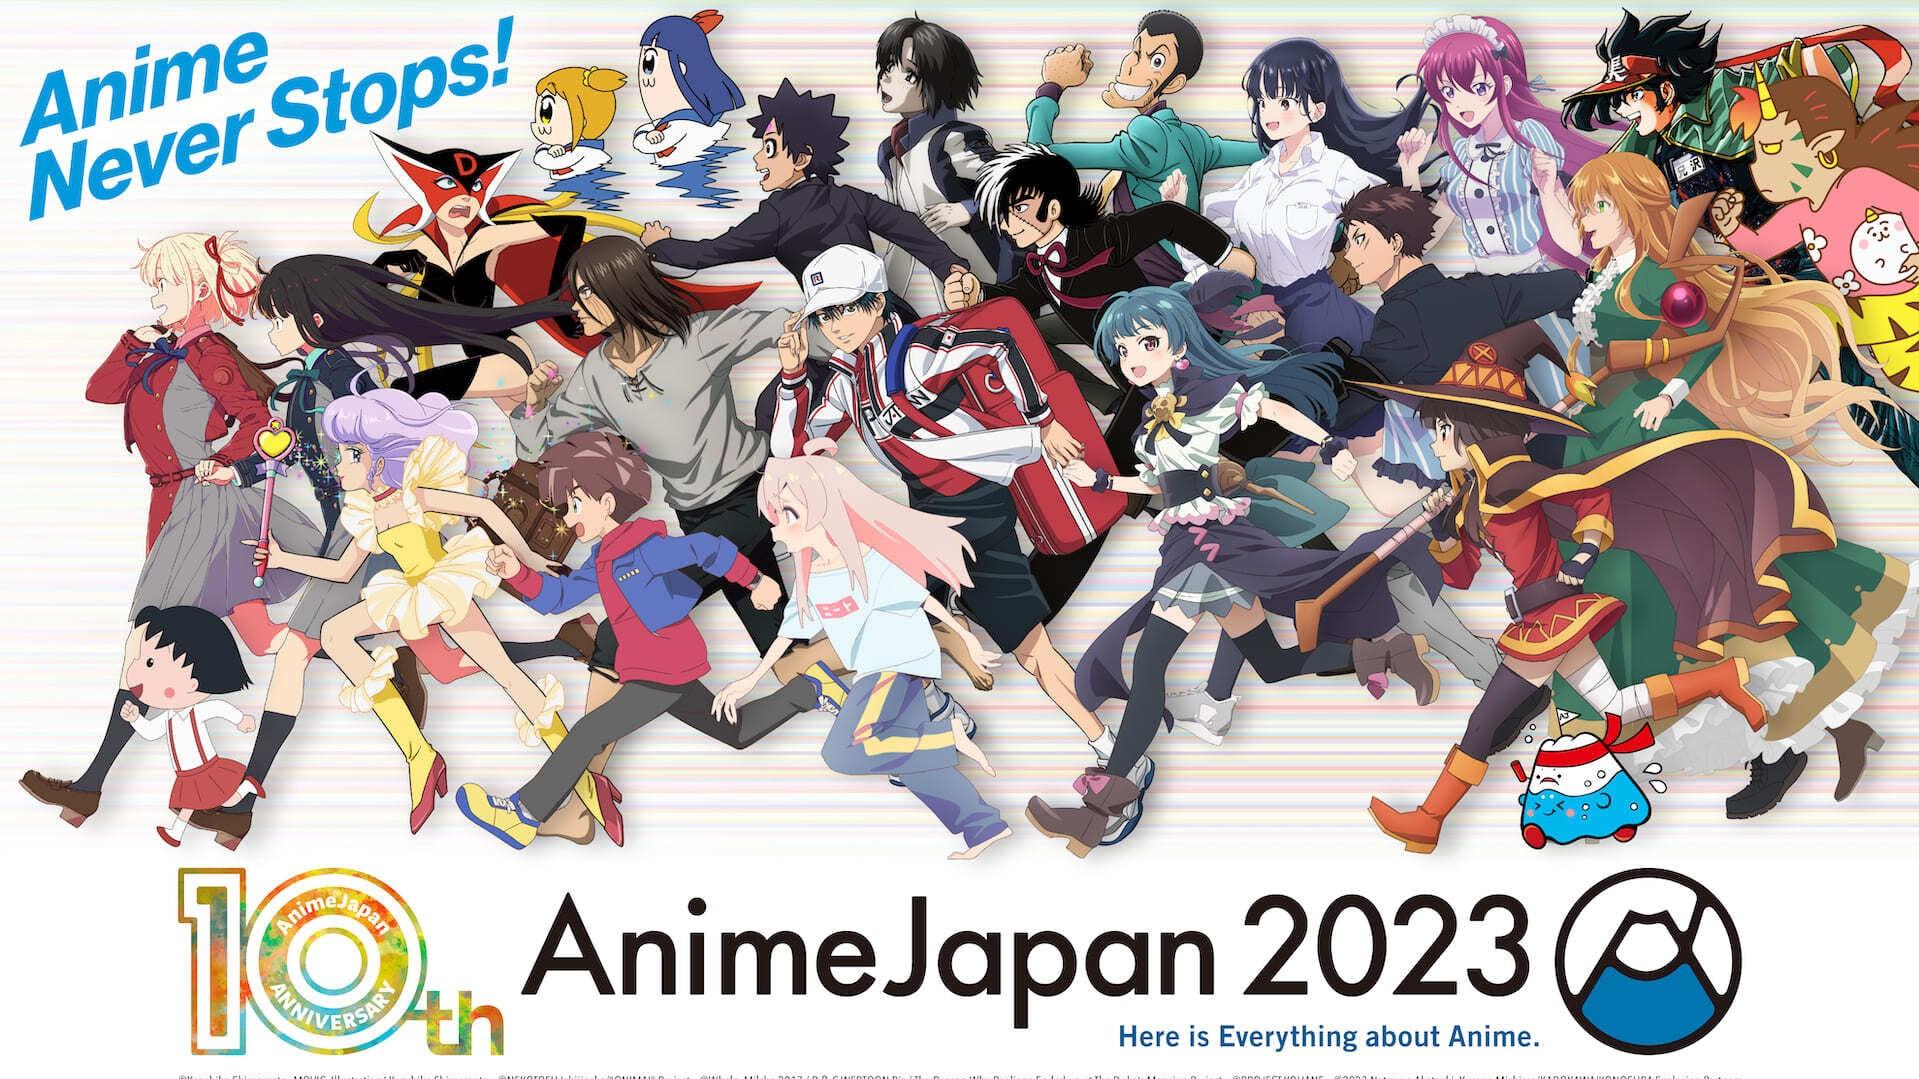 Oshi no Ko TV Anime Continues With Season 2 - Crunchyroll News